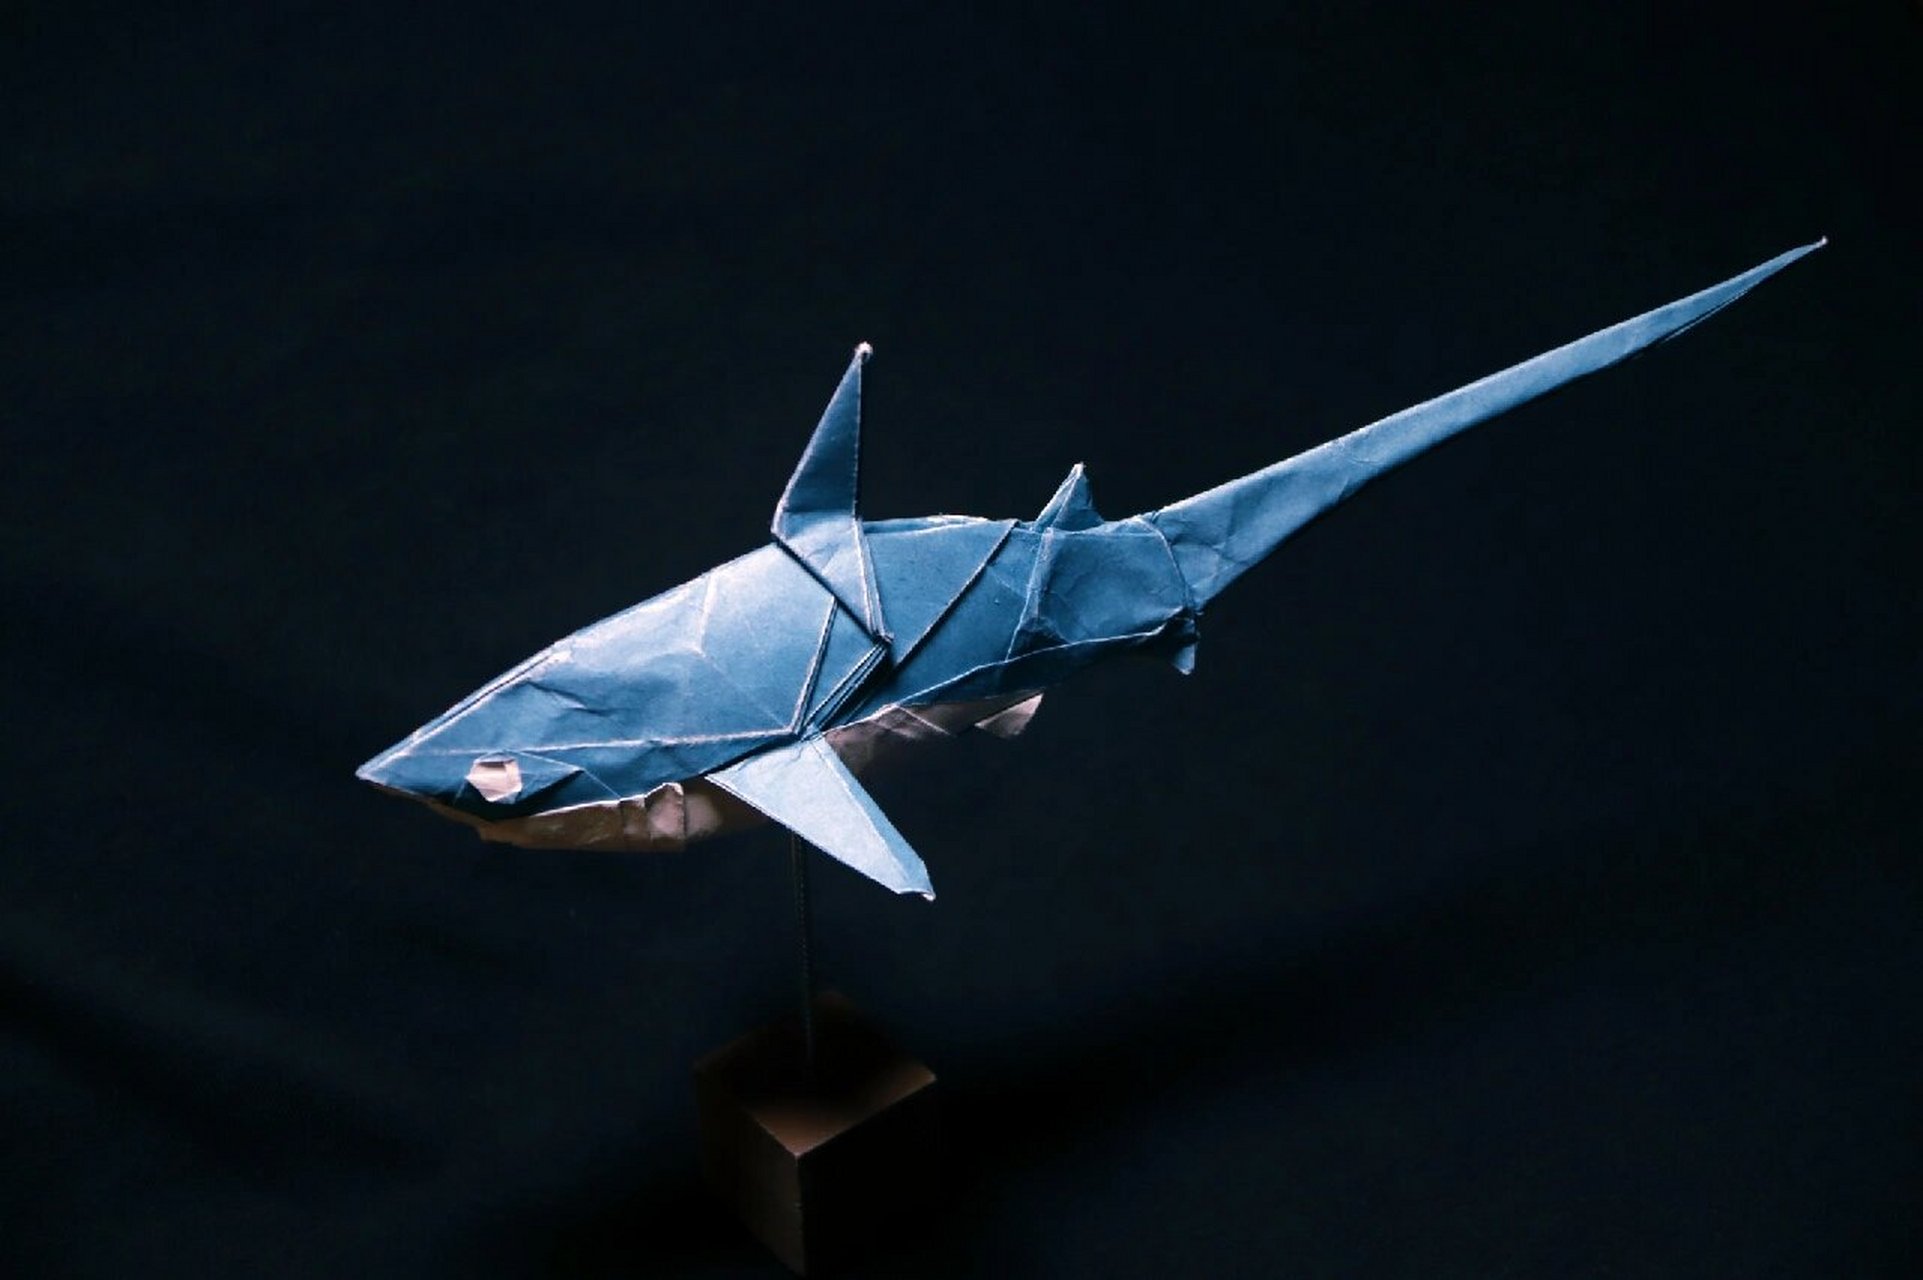 宫岛登鲨鱼折纸王子8图片